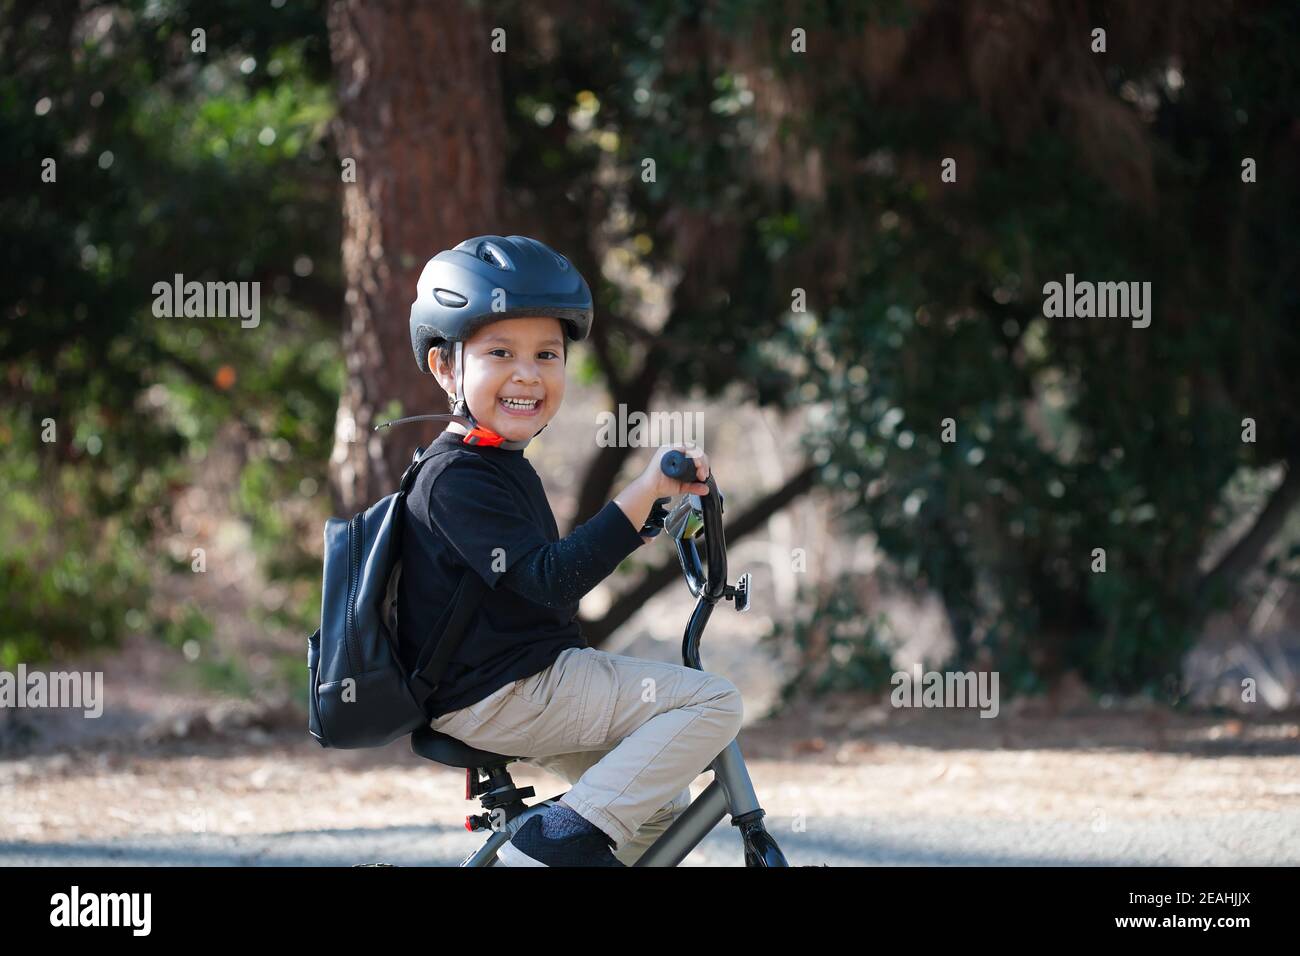 Niño en edad de kindergarten con una gran sonrisa mientras monta en bicicleta, usando una mochila y un casco para la protección. Foto de stock